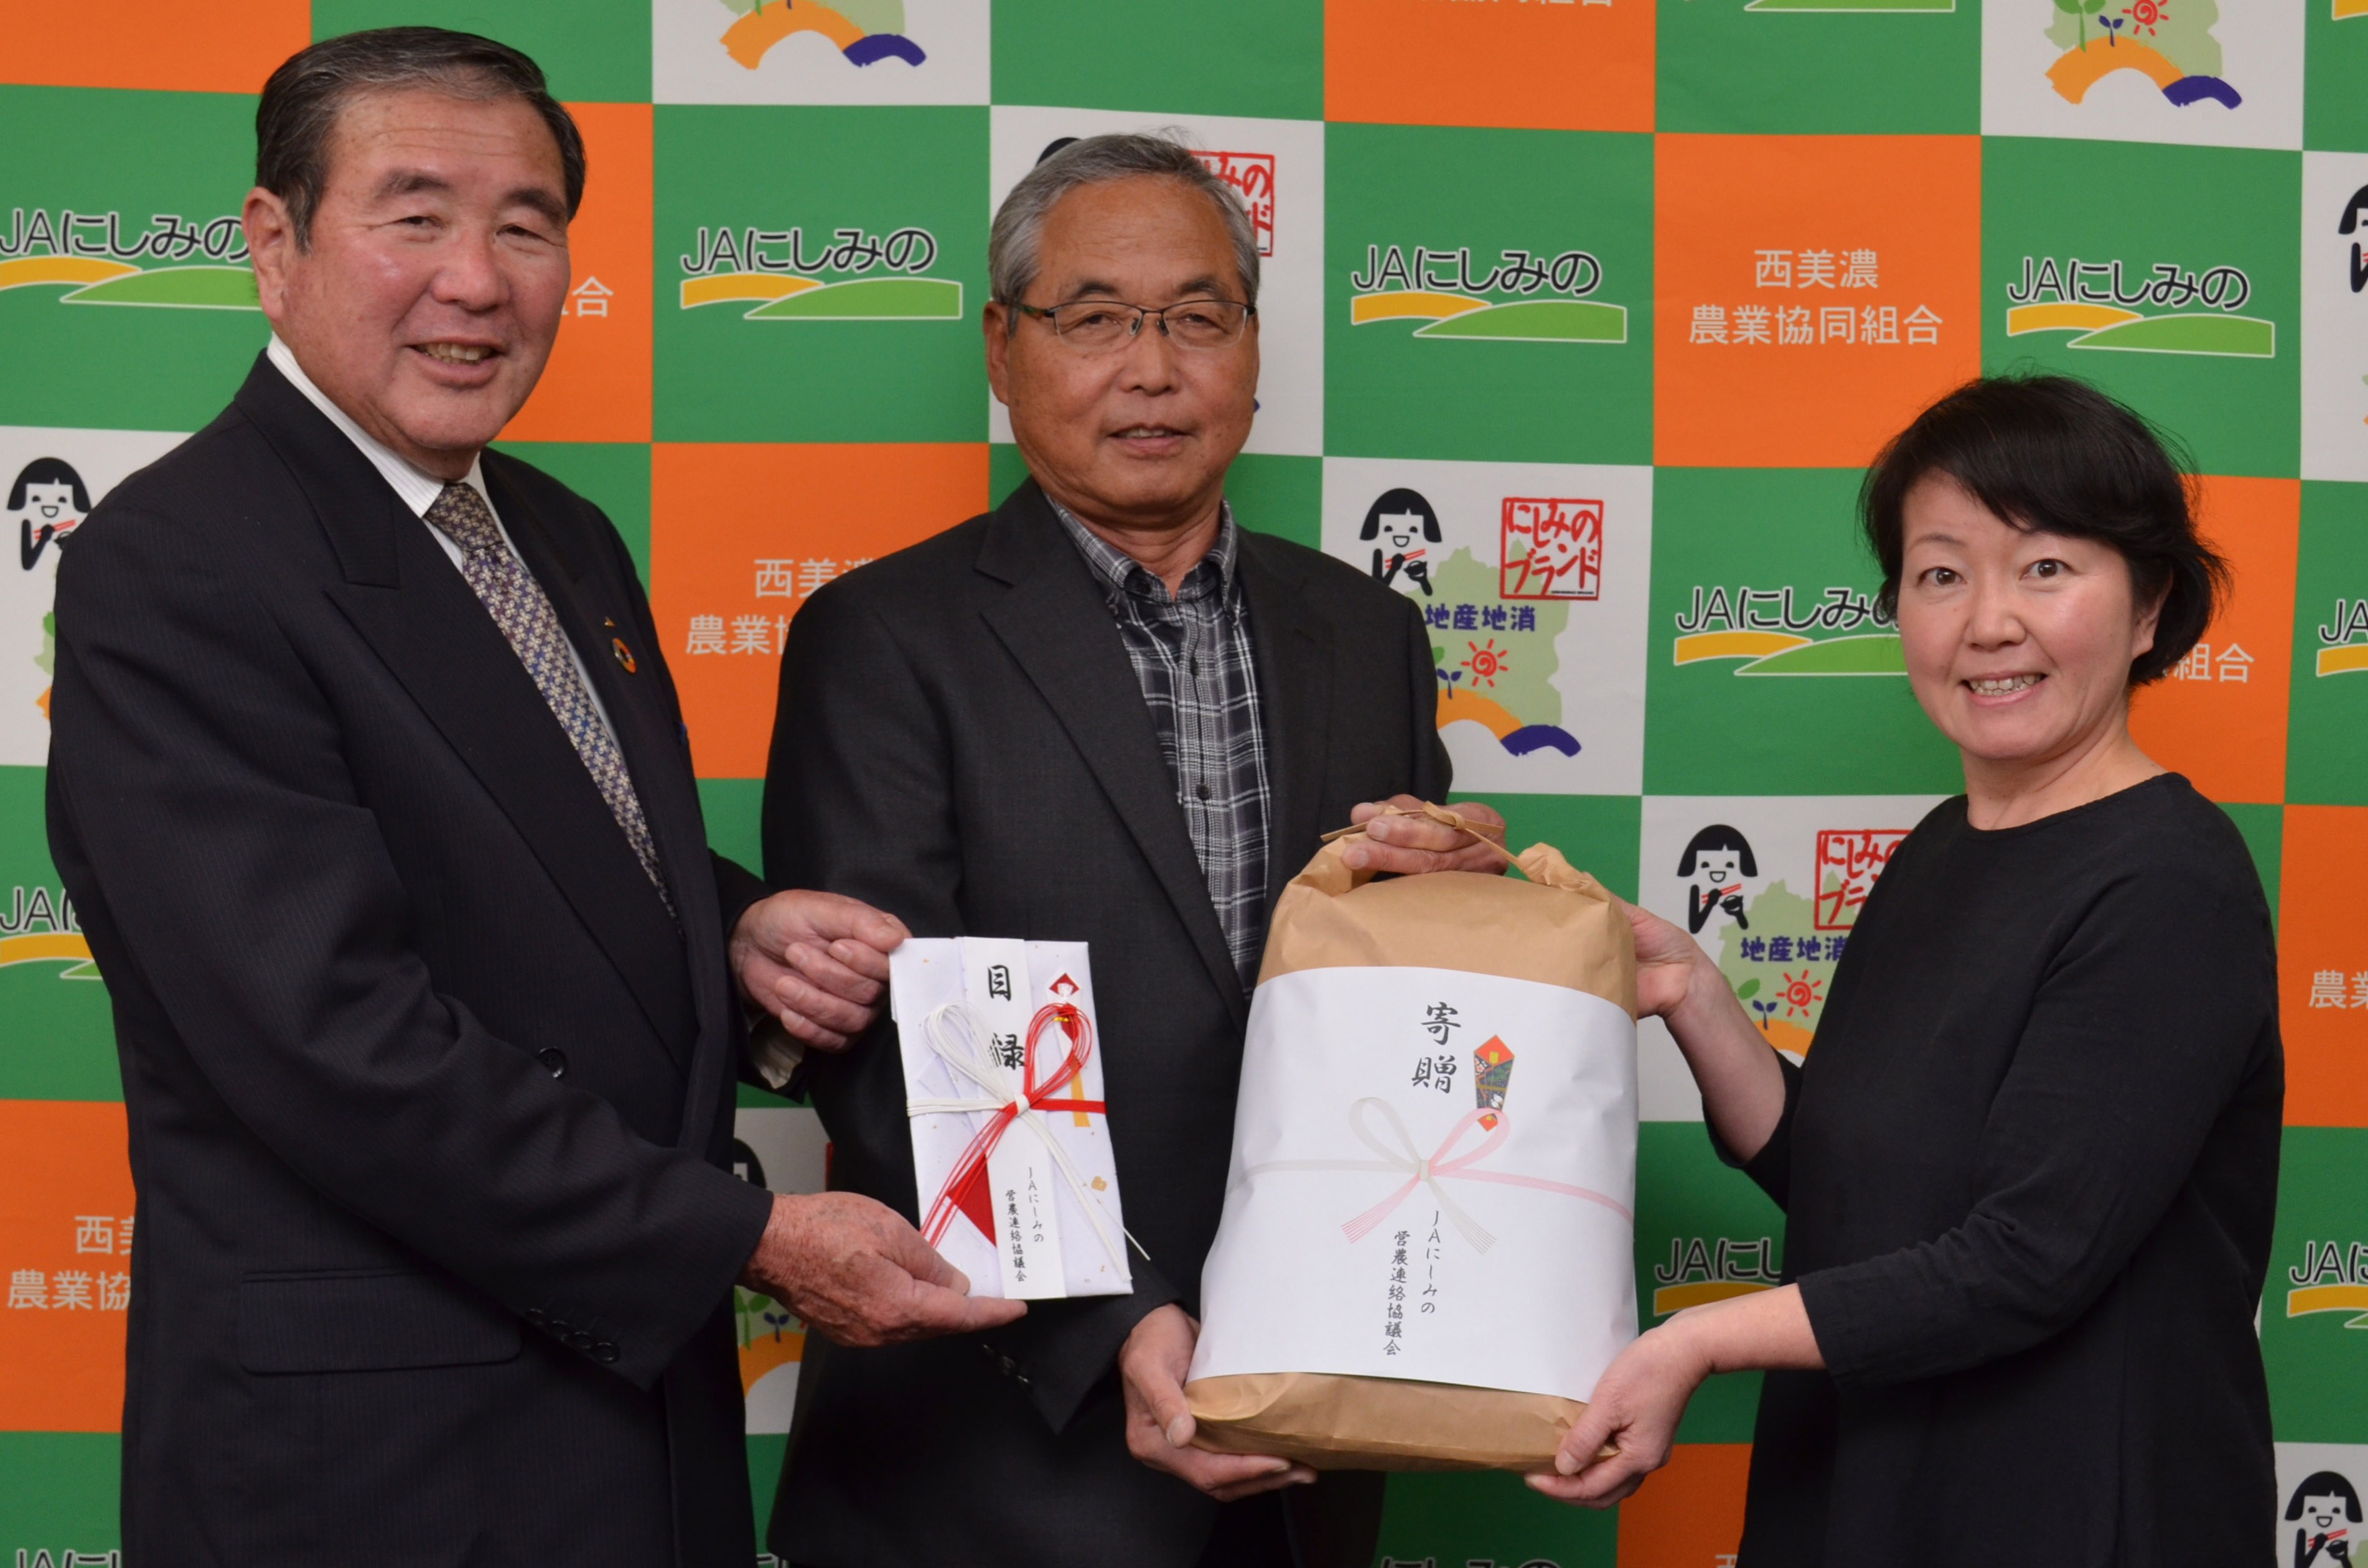 目録と米袋を手に左から小林組合長、杉野会長、松村さん